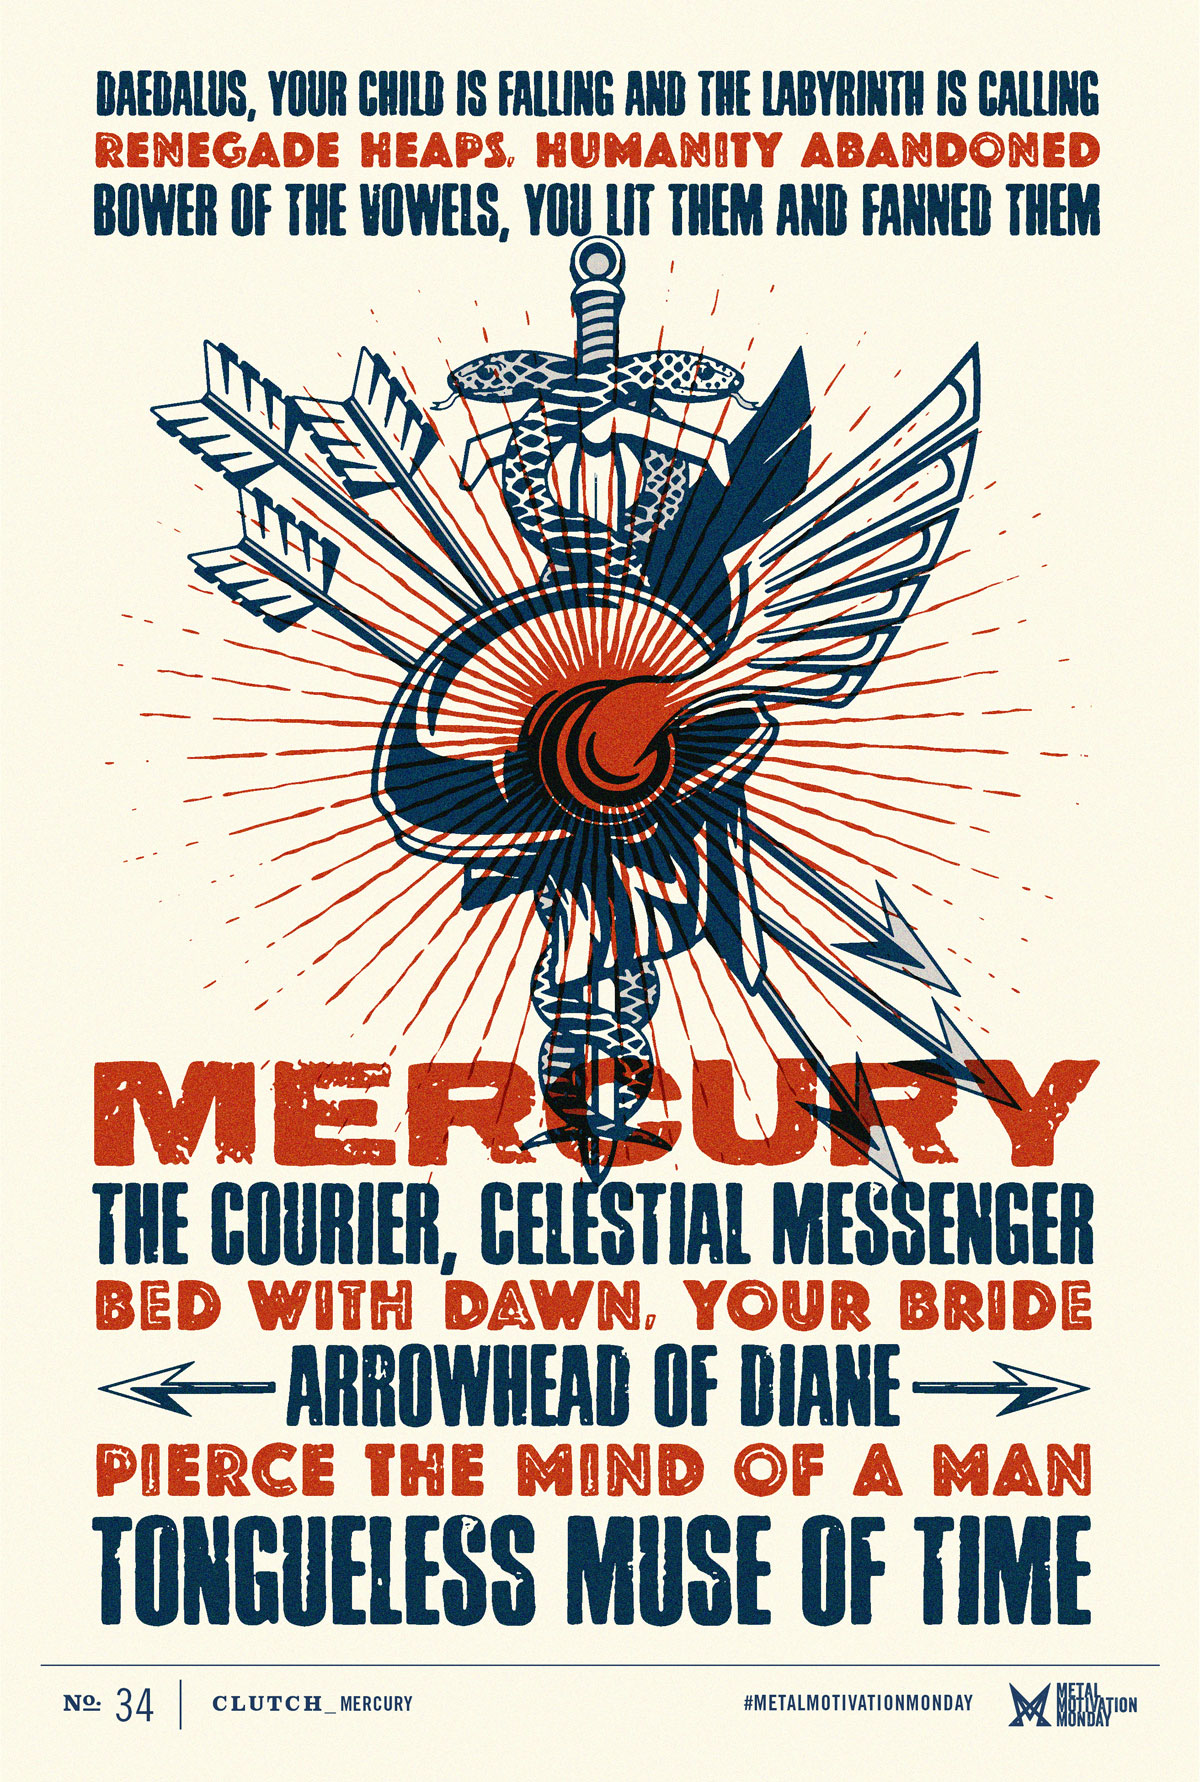 Clutch: Mercury